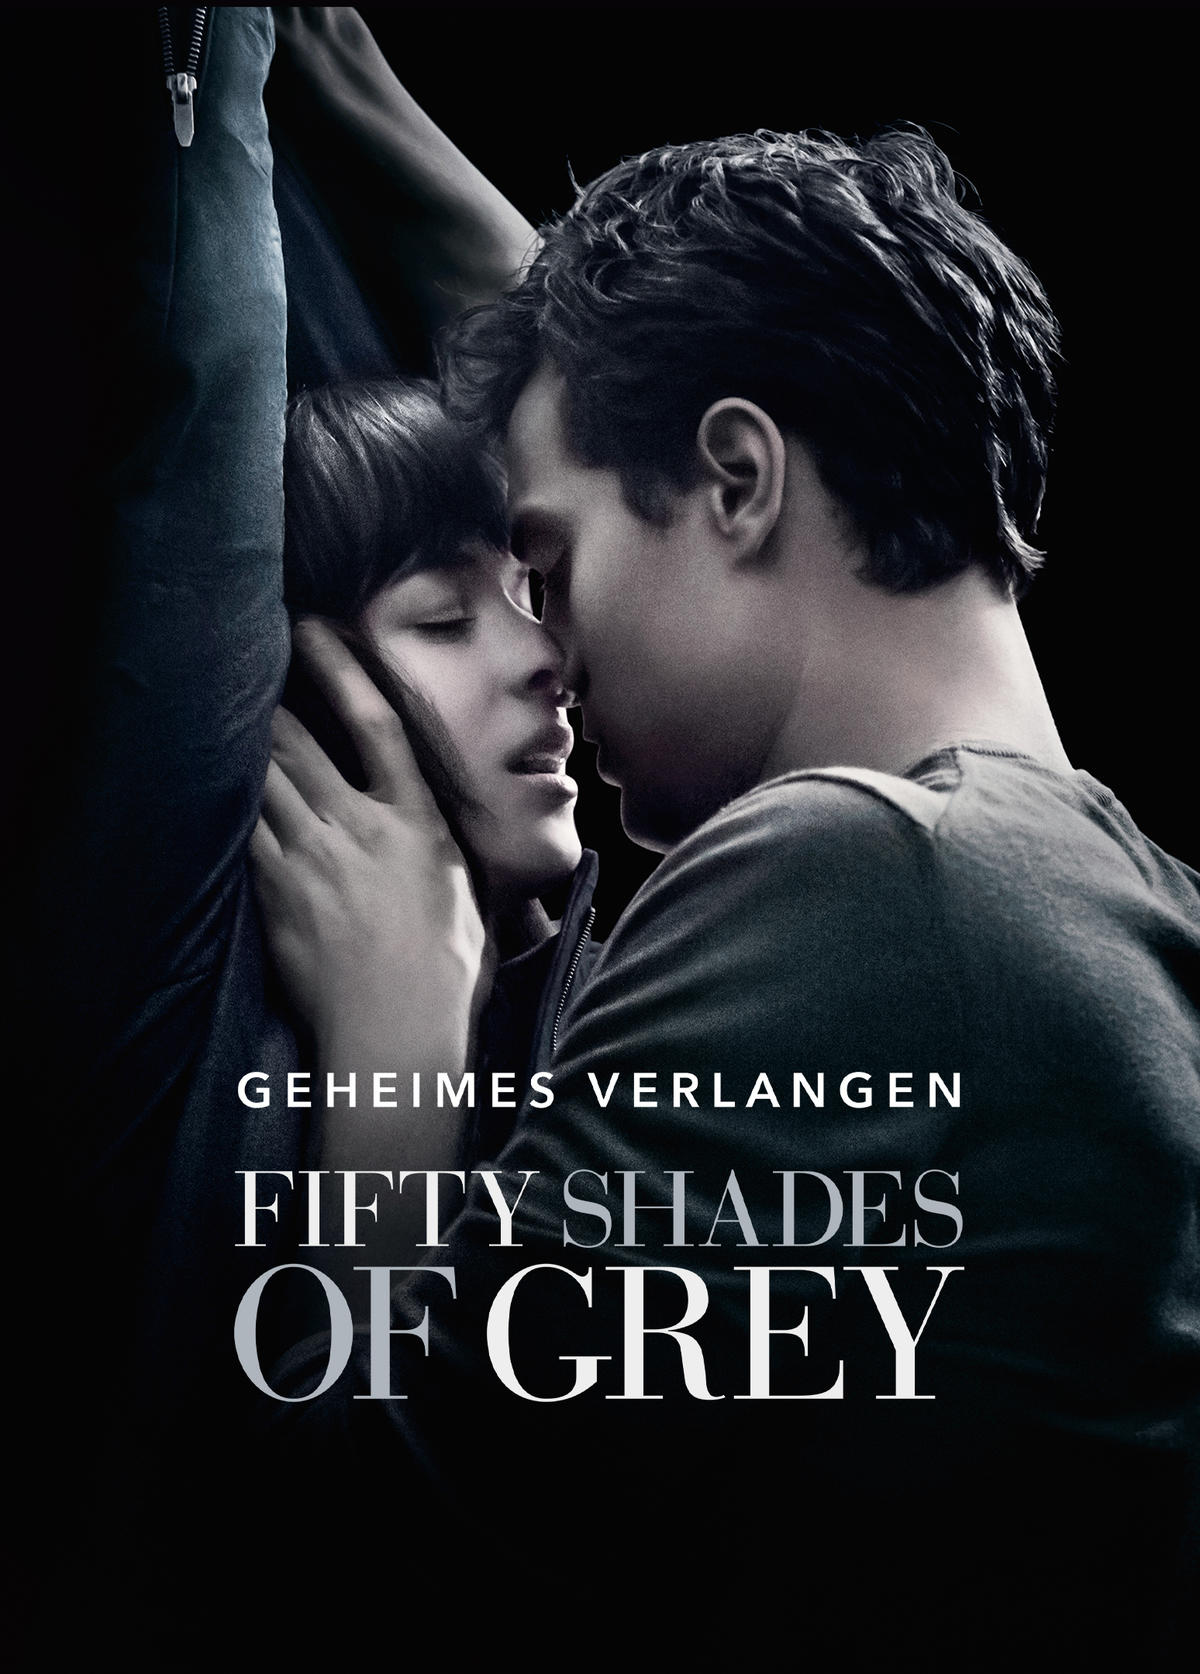 Ganzer kinox film deutsch of grey shades Fifty Shades